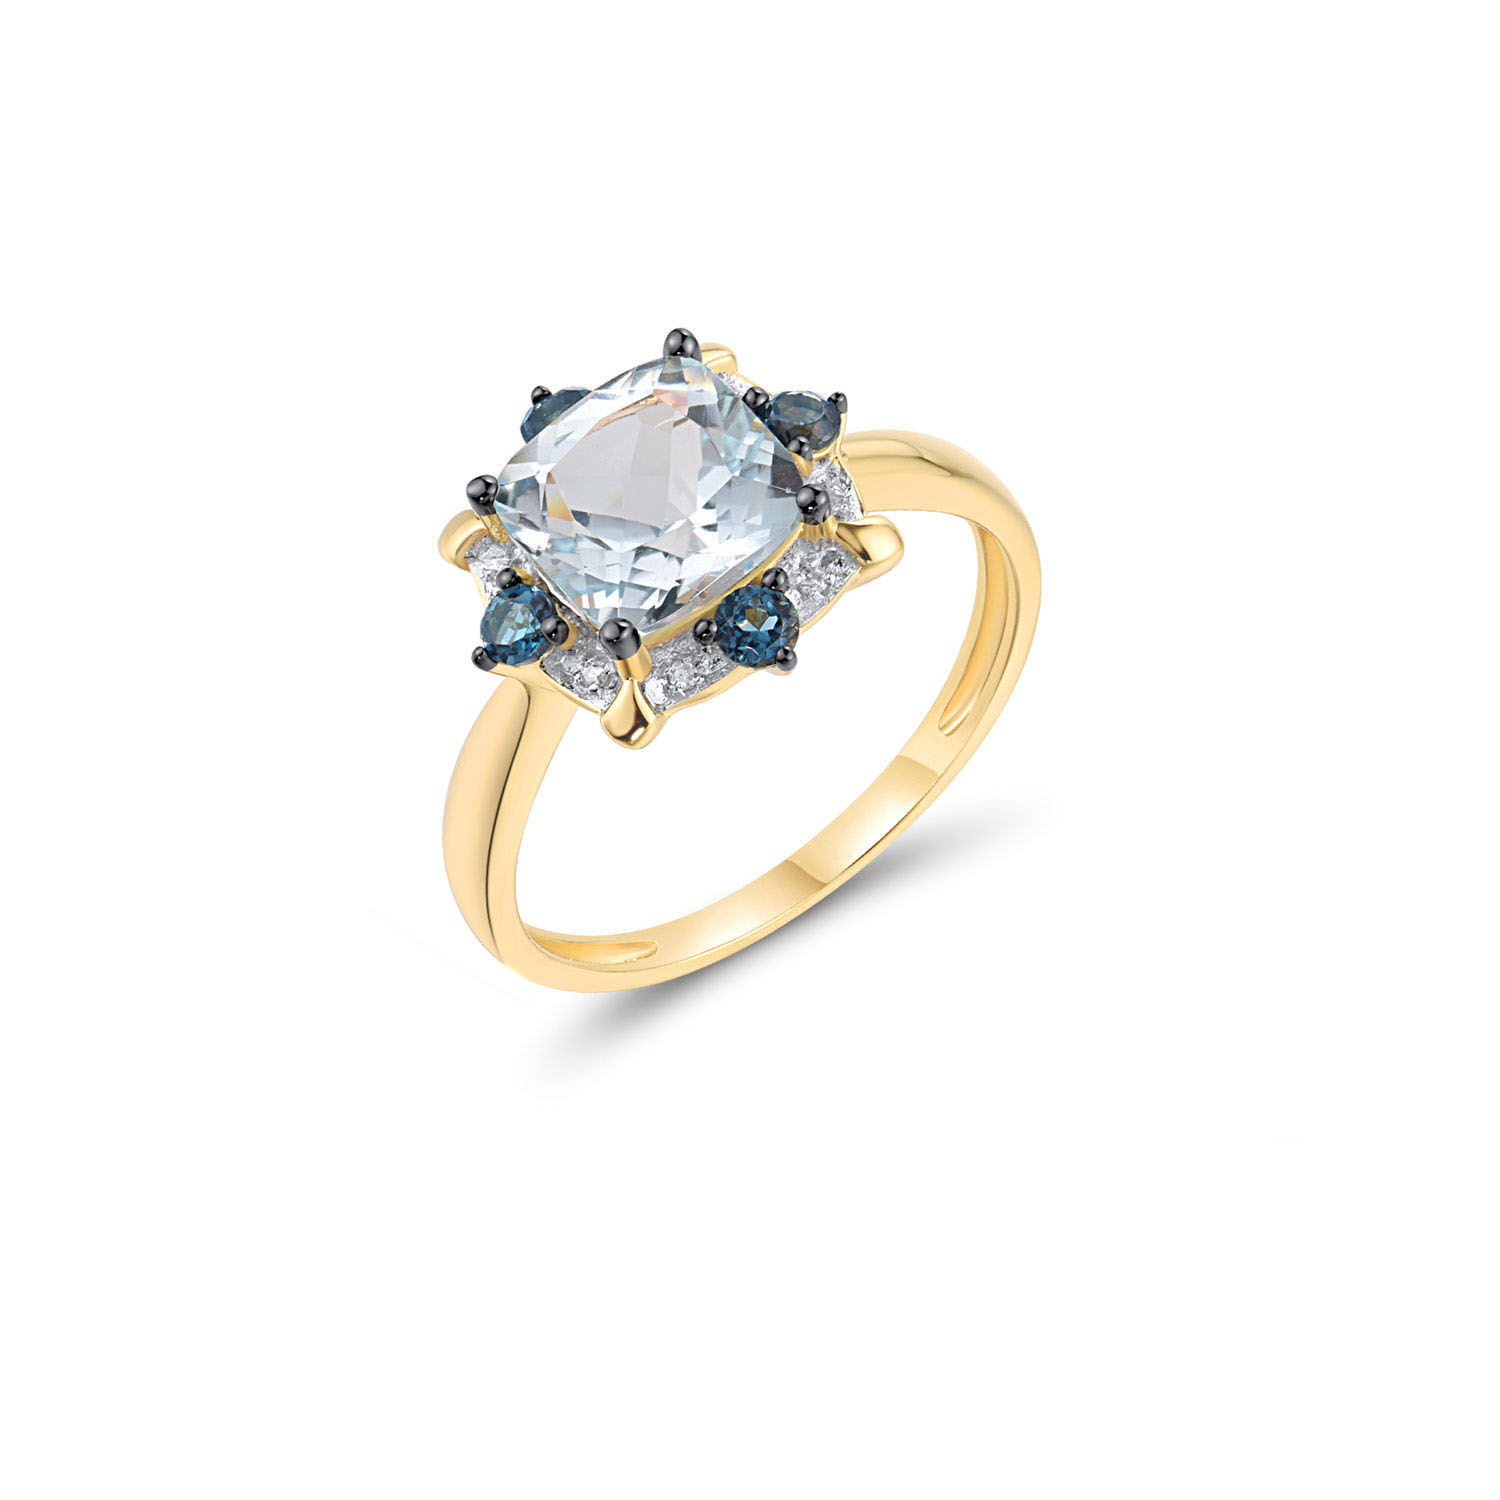 Δαχτυλίδι Secret Garden από χρυσό 18K με μπλε τοπάζι, London blue topaz και διαμάντια μπριγιάν